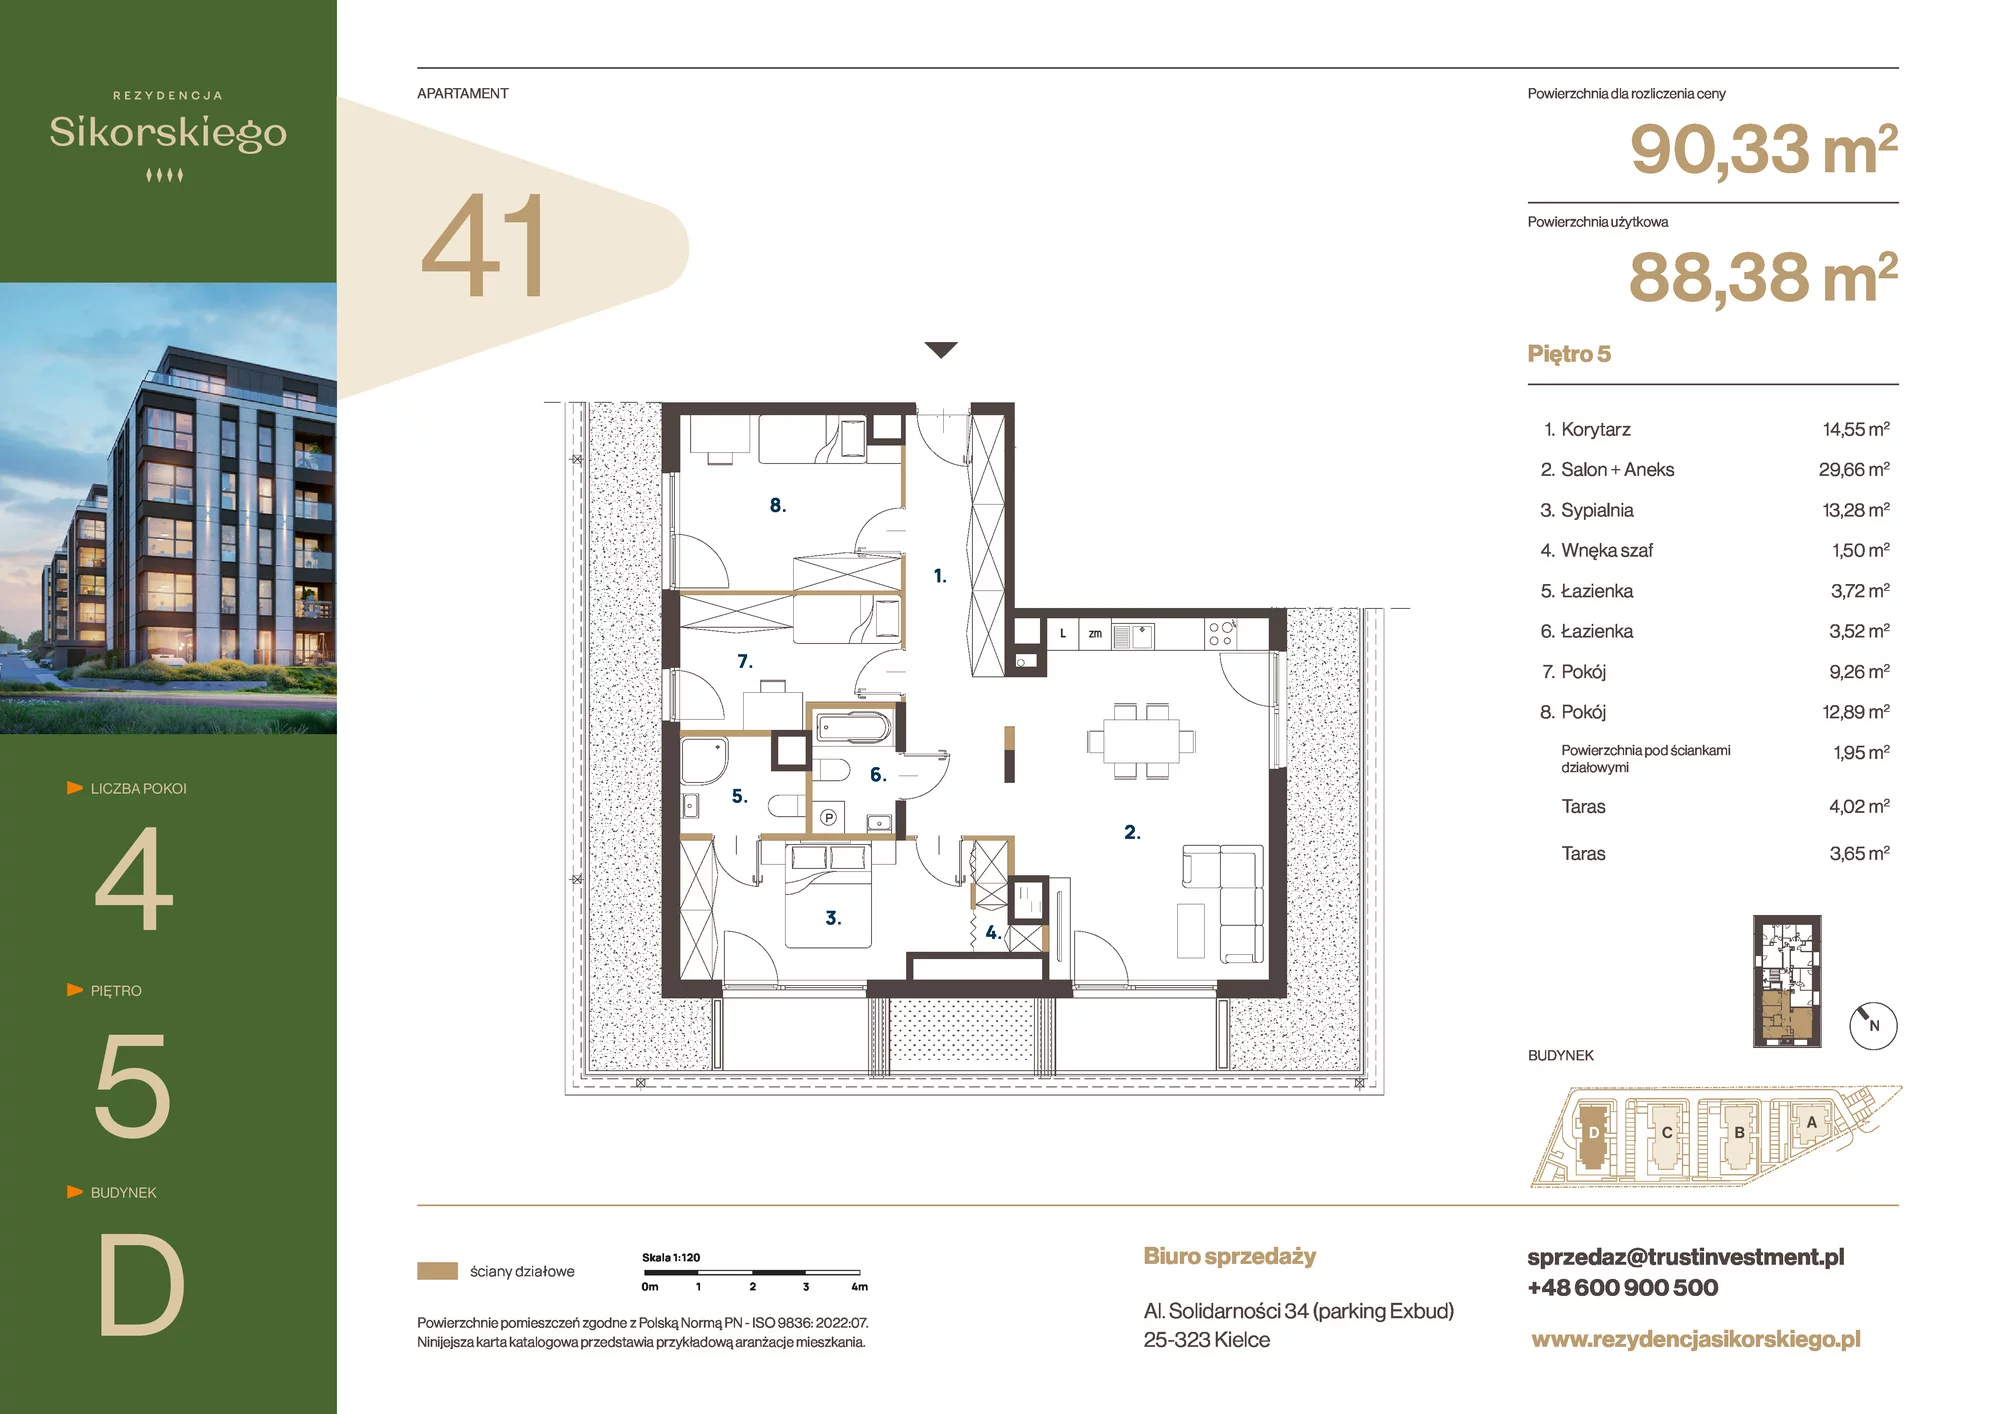 Mieszkanie 90,33 m², piętro 5, oferta nr D41, Rezydencja Sikorskiego, Kielce, Na Stoku, ul. Sikorskiego